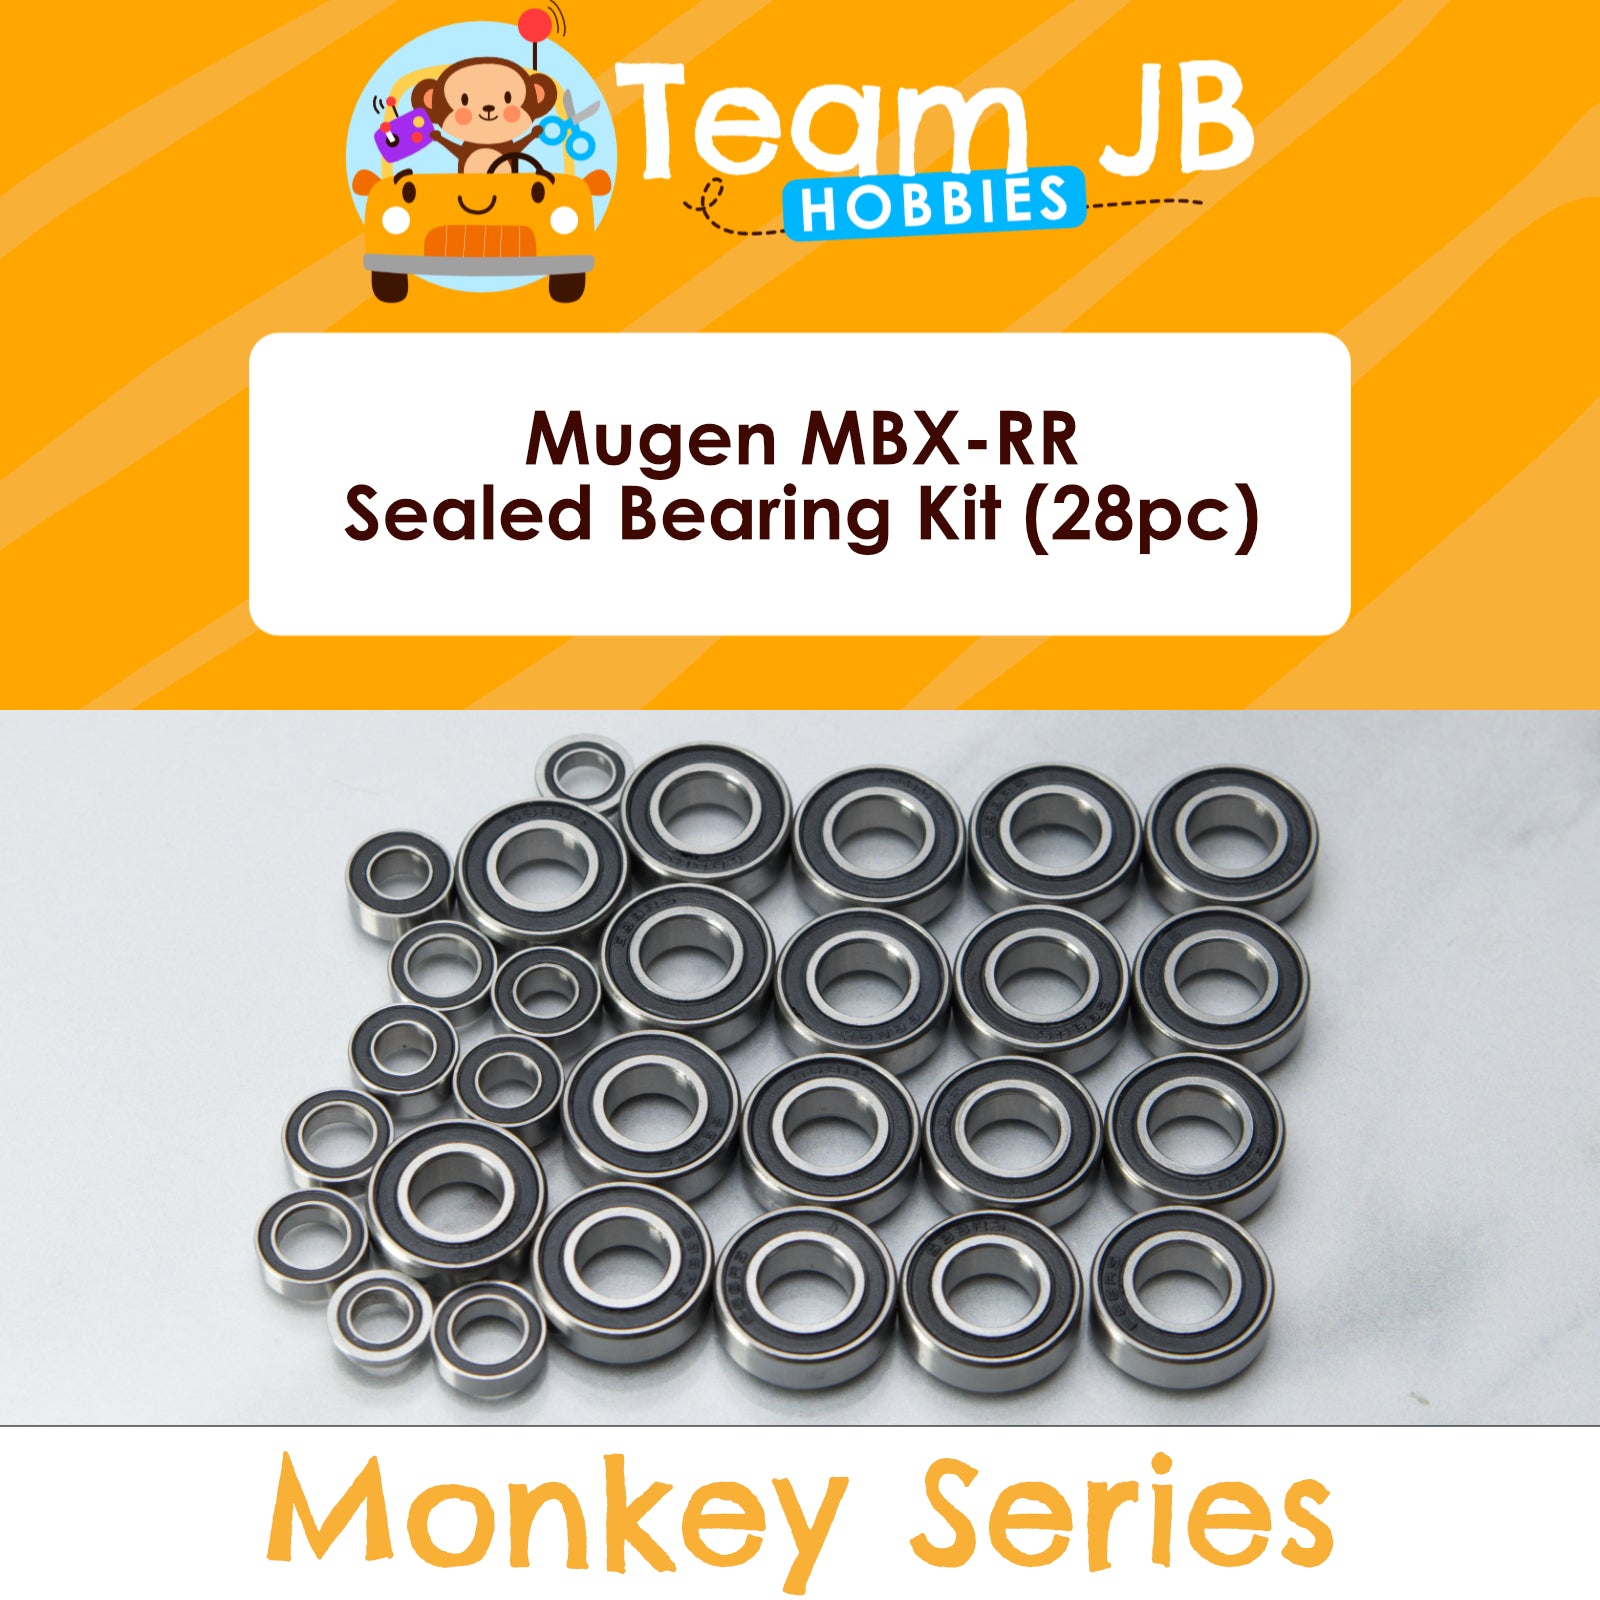 Mugen MBX-RR - Sealed Bearing Kit